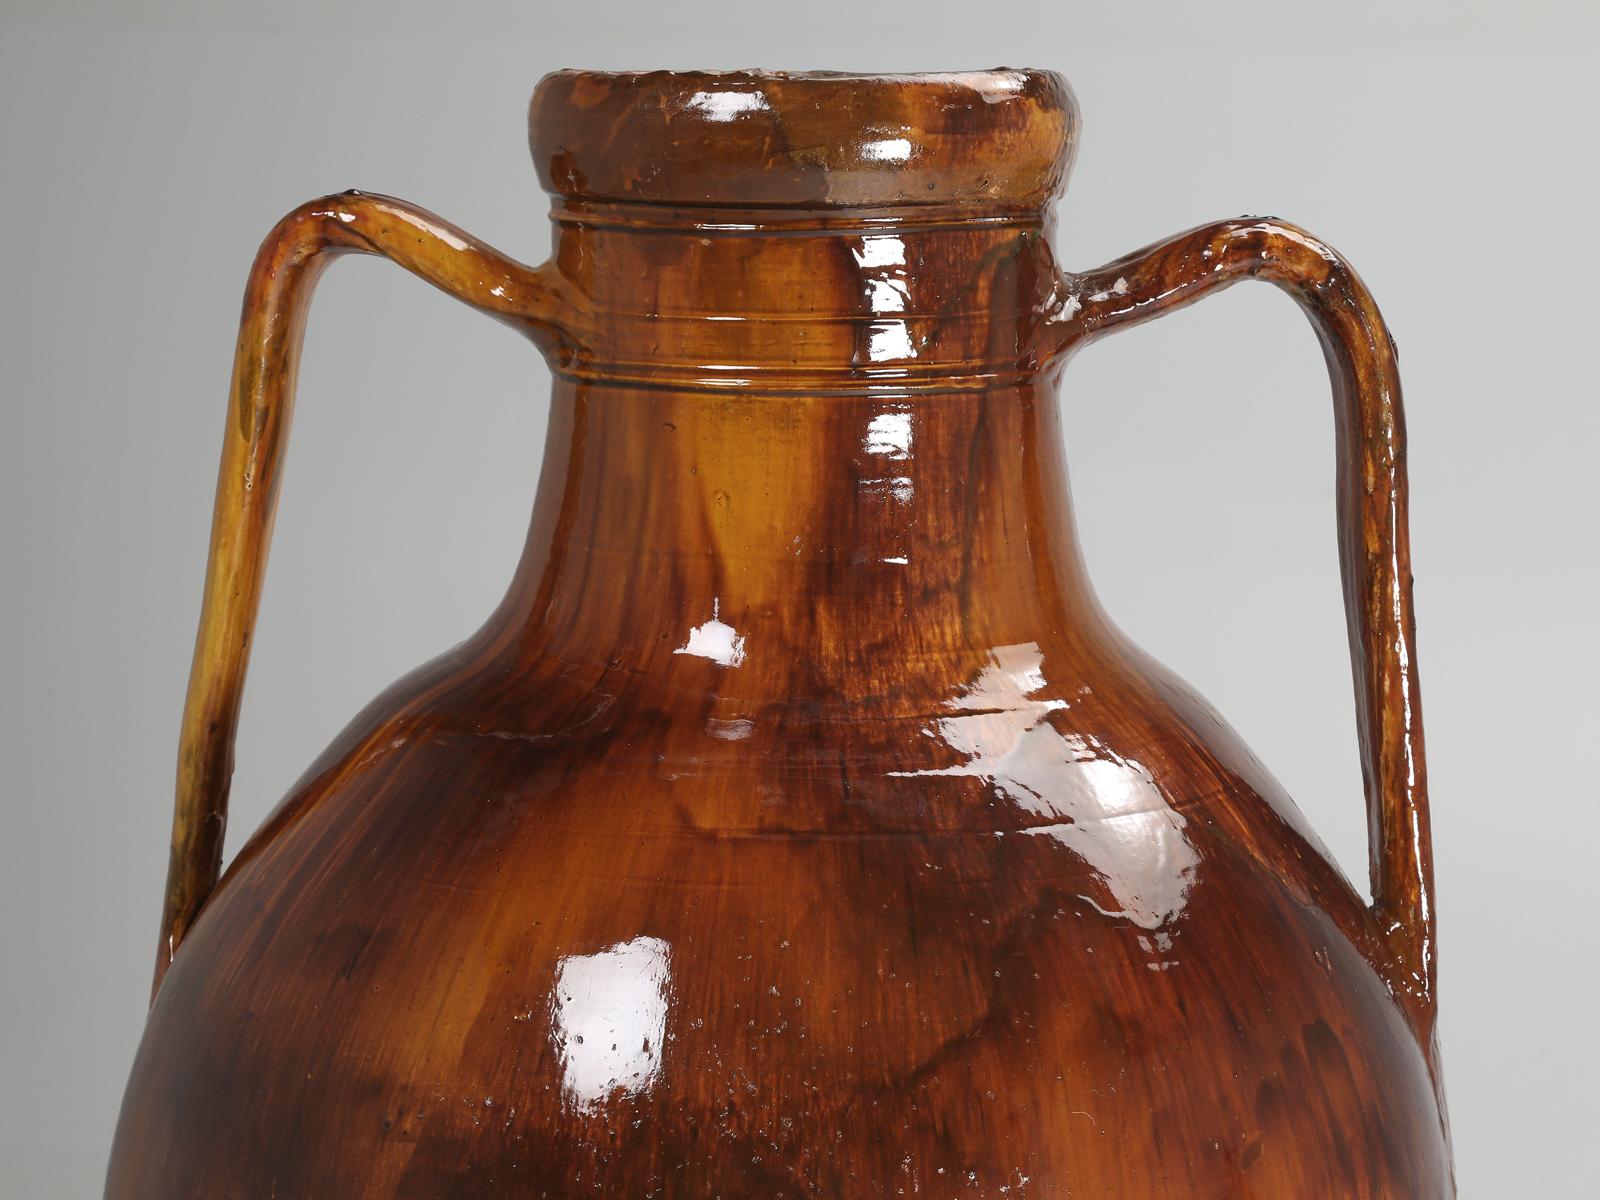 Terracotta Antique Huge Italian Olive Oil Jar or Amphora in Great Color Palette